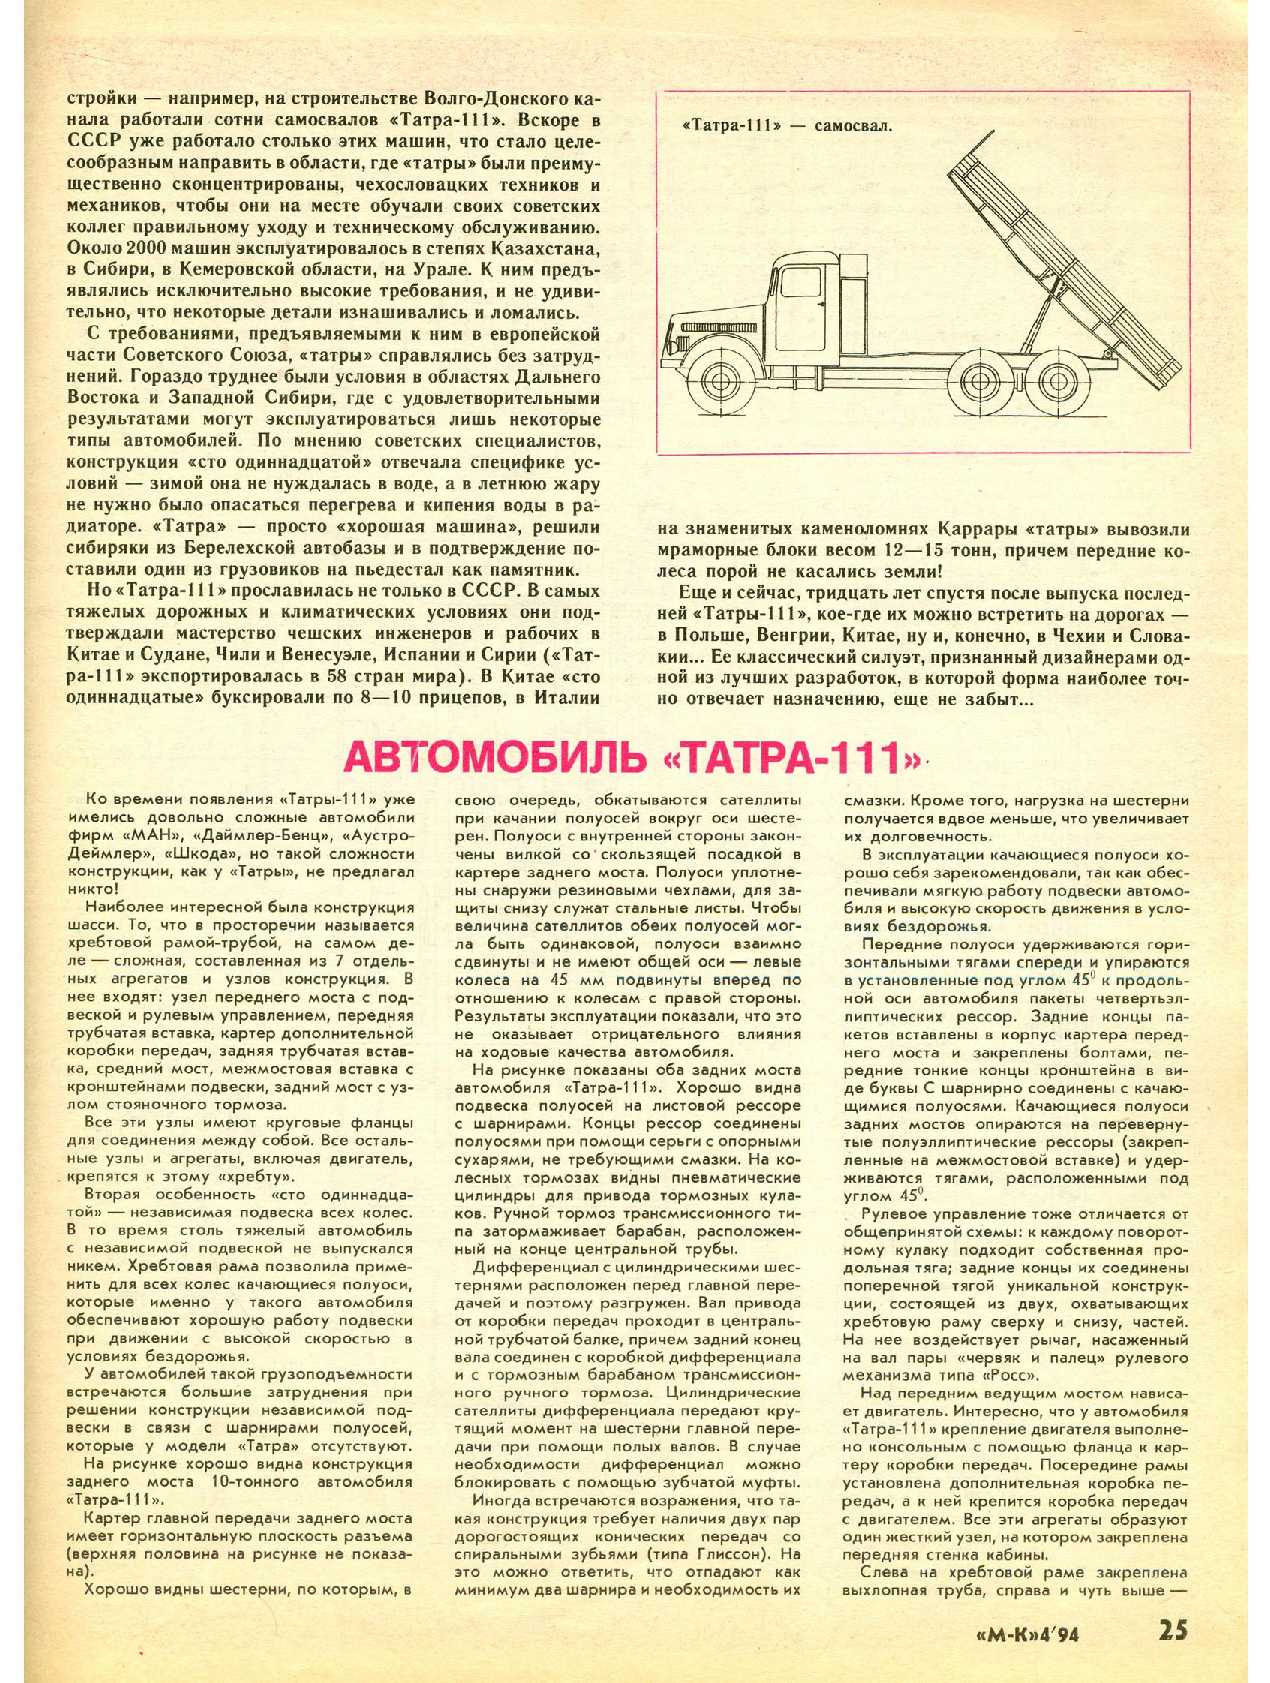 МК 4, 1994, 25 c.